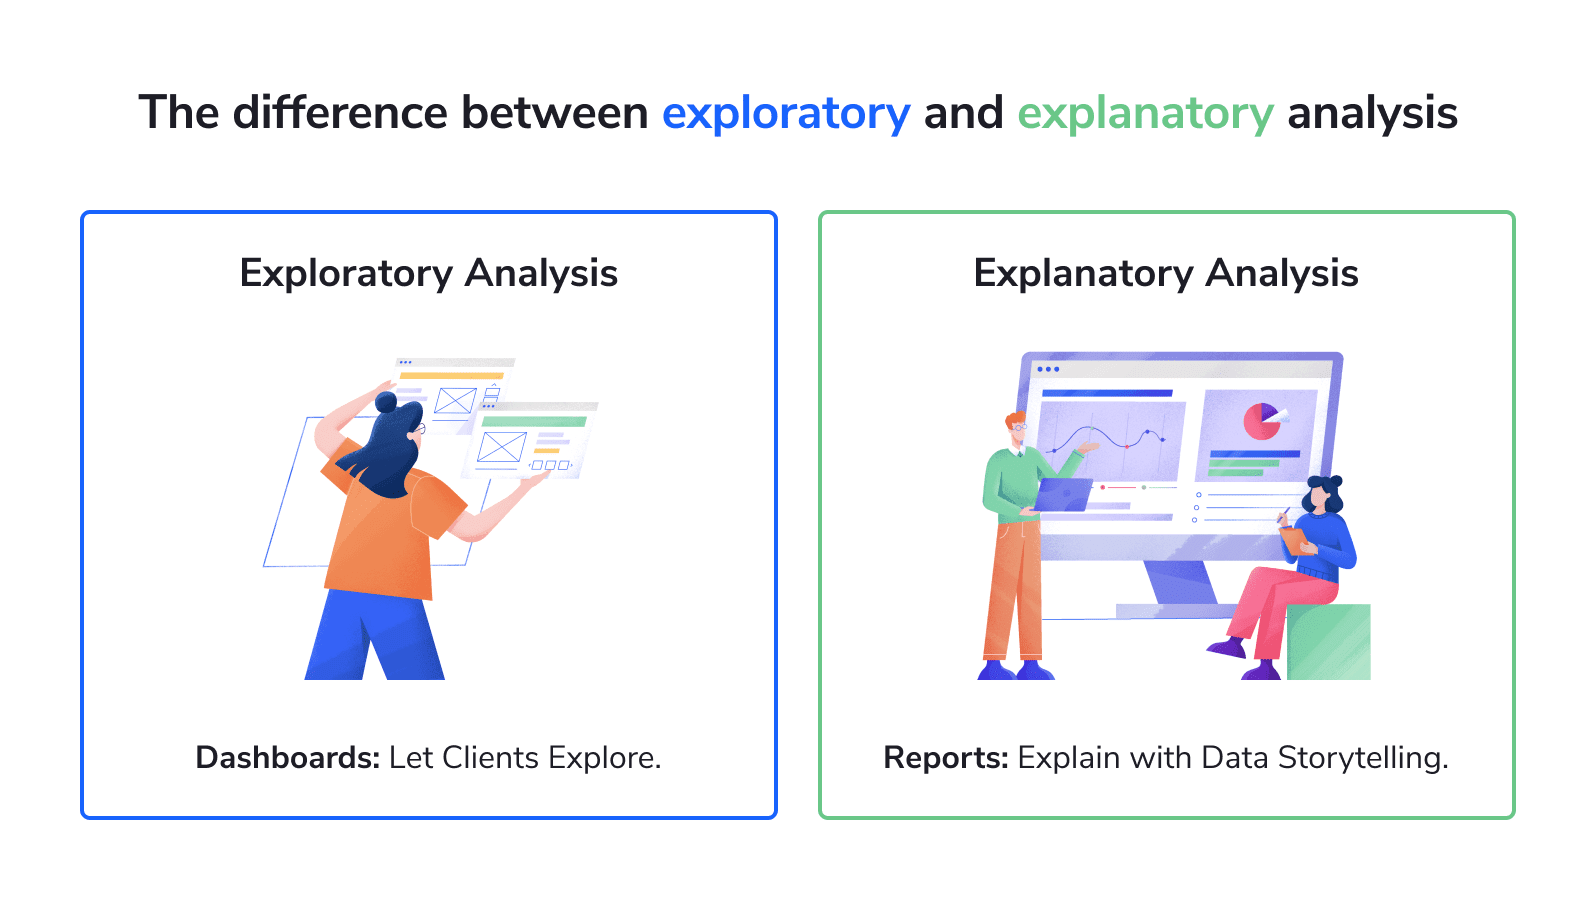 Exploratory and explanatory analysis